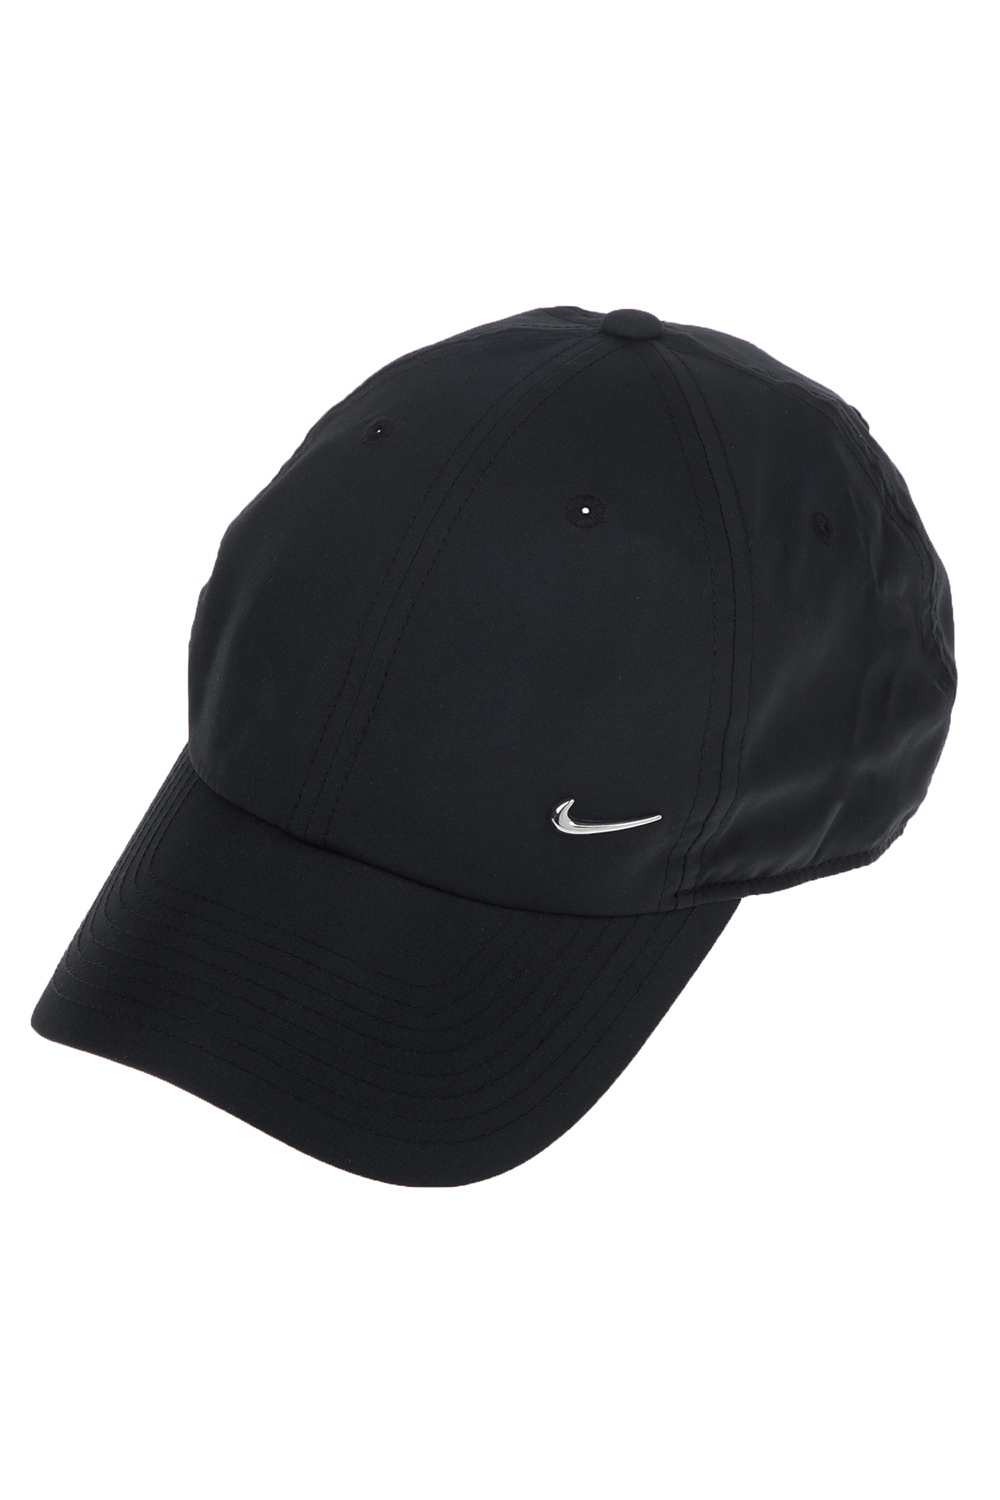 Γυναικεία/Αξεσουάρ/Καπέλα/Αθλητικά NIKE - Unisex καπέλο NIKE METAL SWOOSH μαύρο